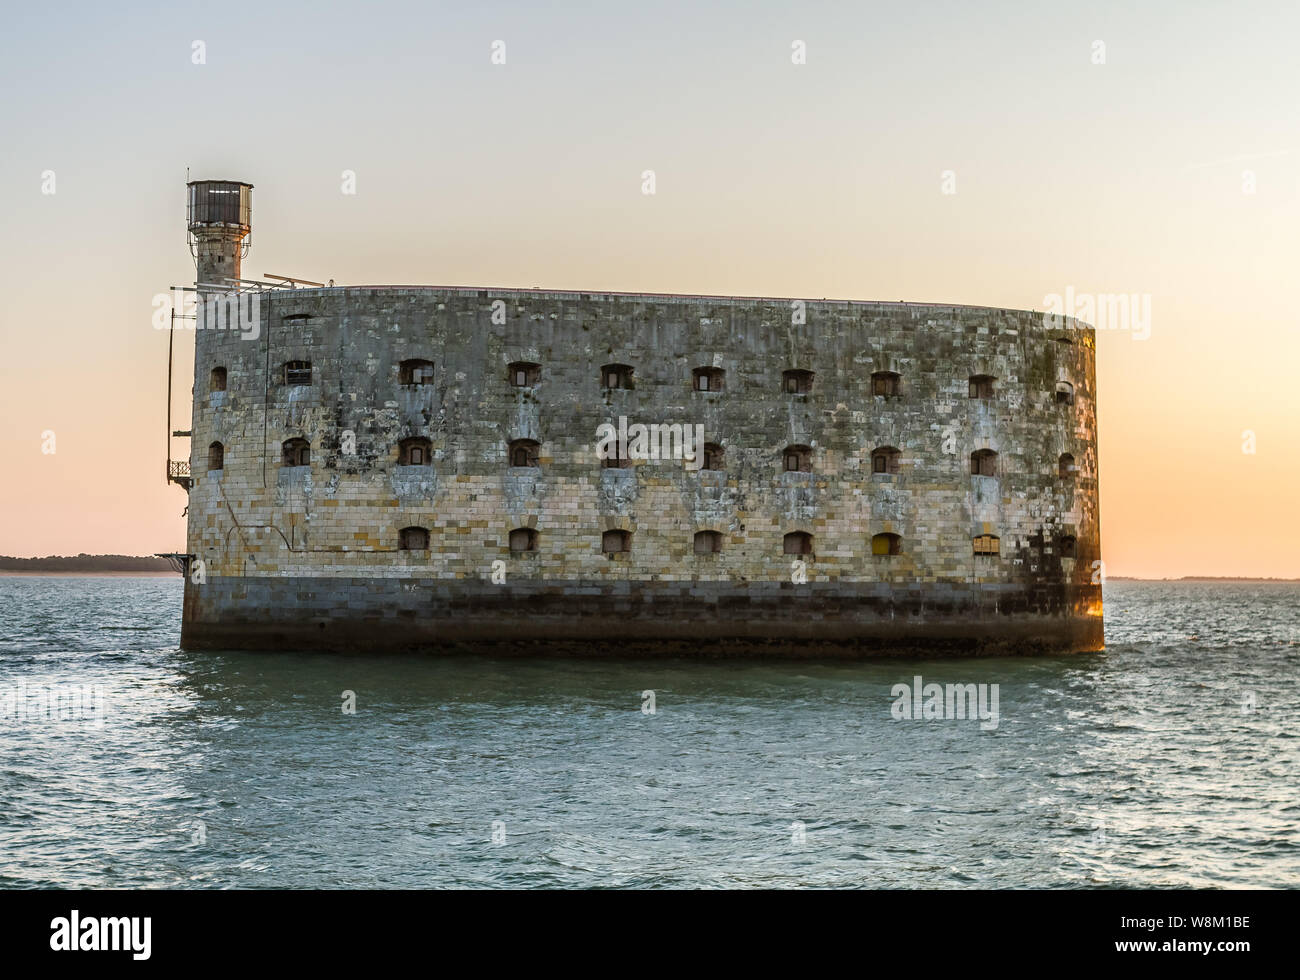 Le Fort Boyard est une fortification située sur un haut fond formé d'un banc de sable à l'origine, appelé la " longe de boyard " qui se découvre à mar Banque D'Images